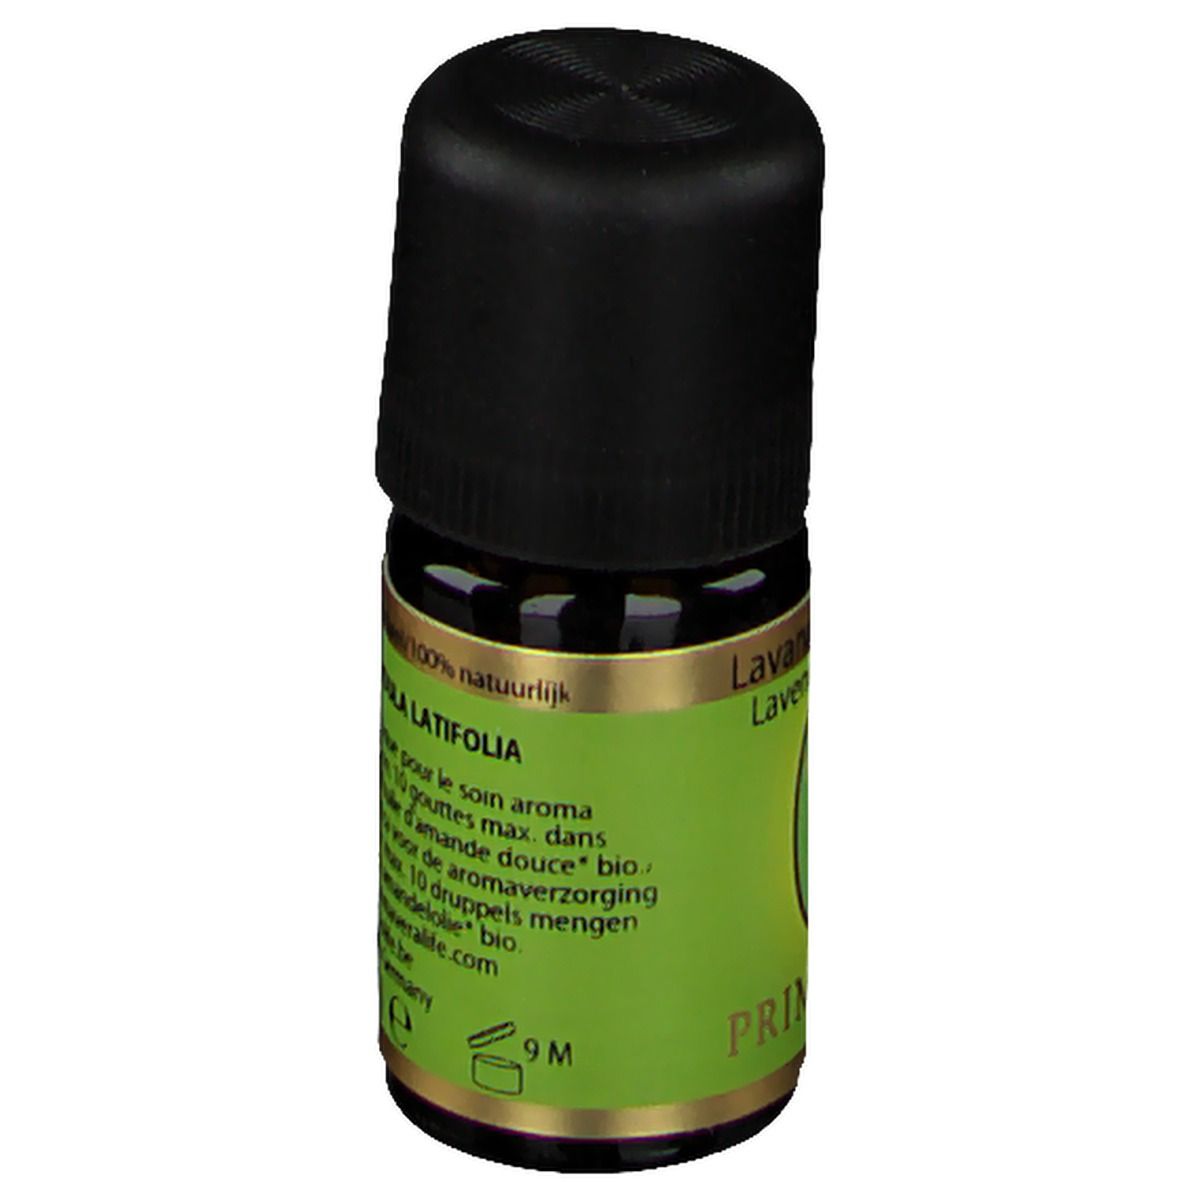 PRIMAVERA® Lavender Spijk Essential Oil